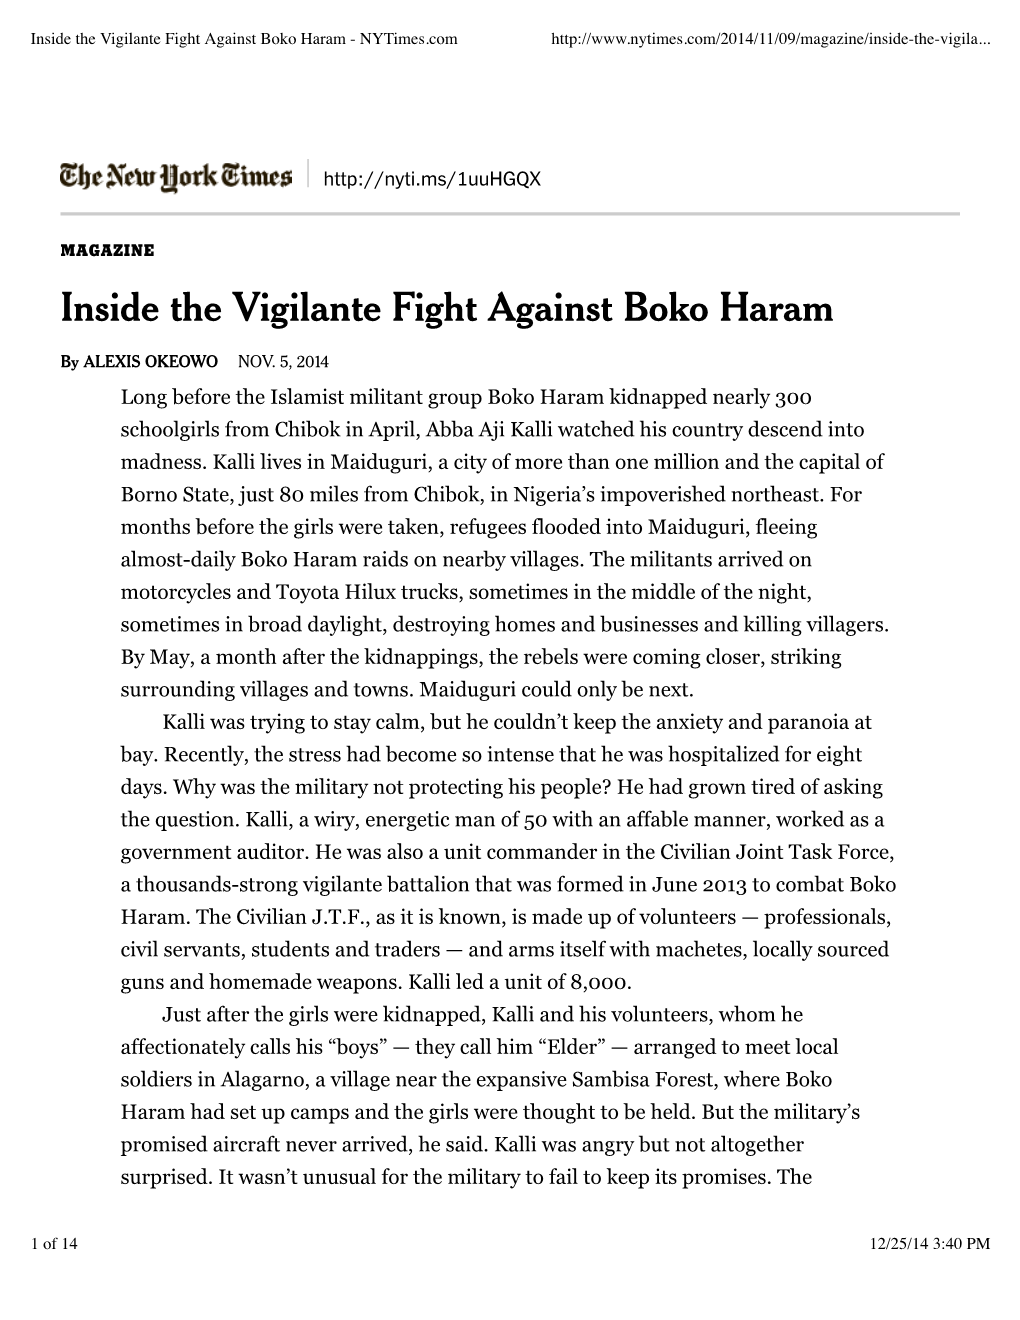 Inside the Vigilante Fight Against Boko Haram - Nytimes.Com